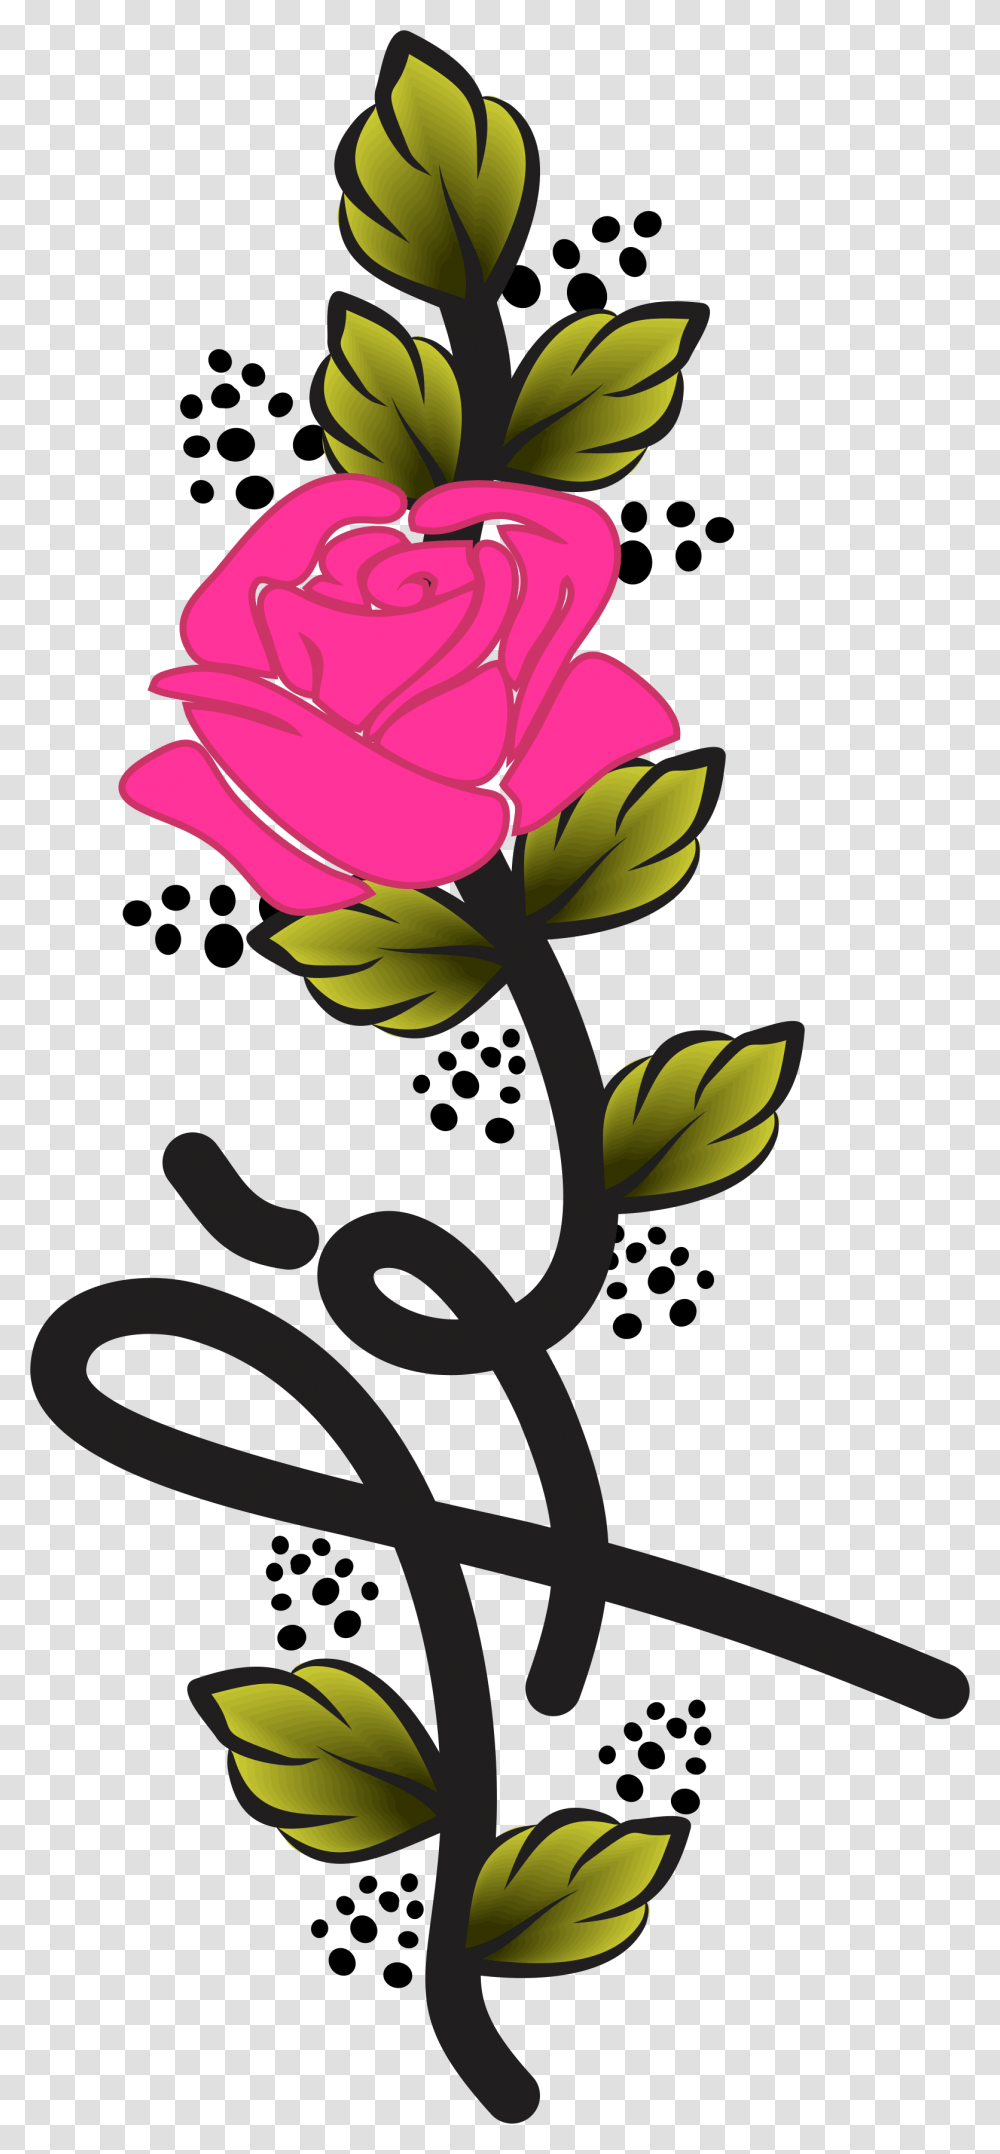 Papel De Parede Foco E F, Rose, Flower, Plant, Blossom Transparent Png